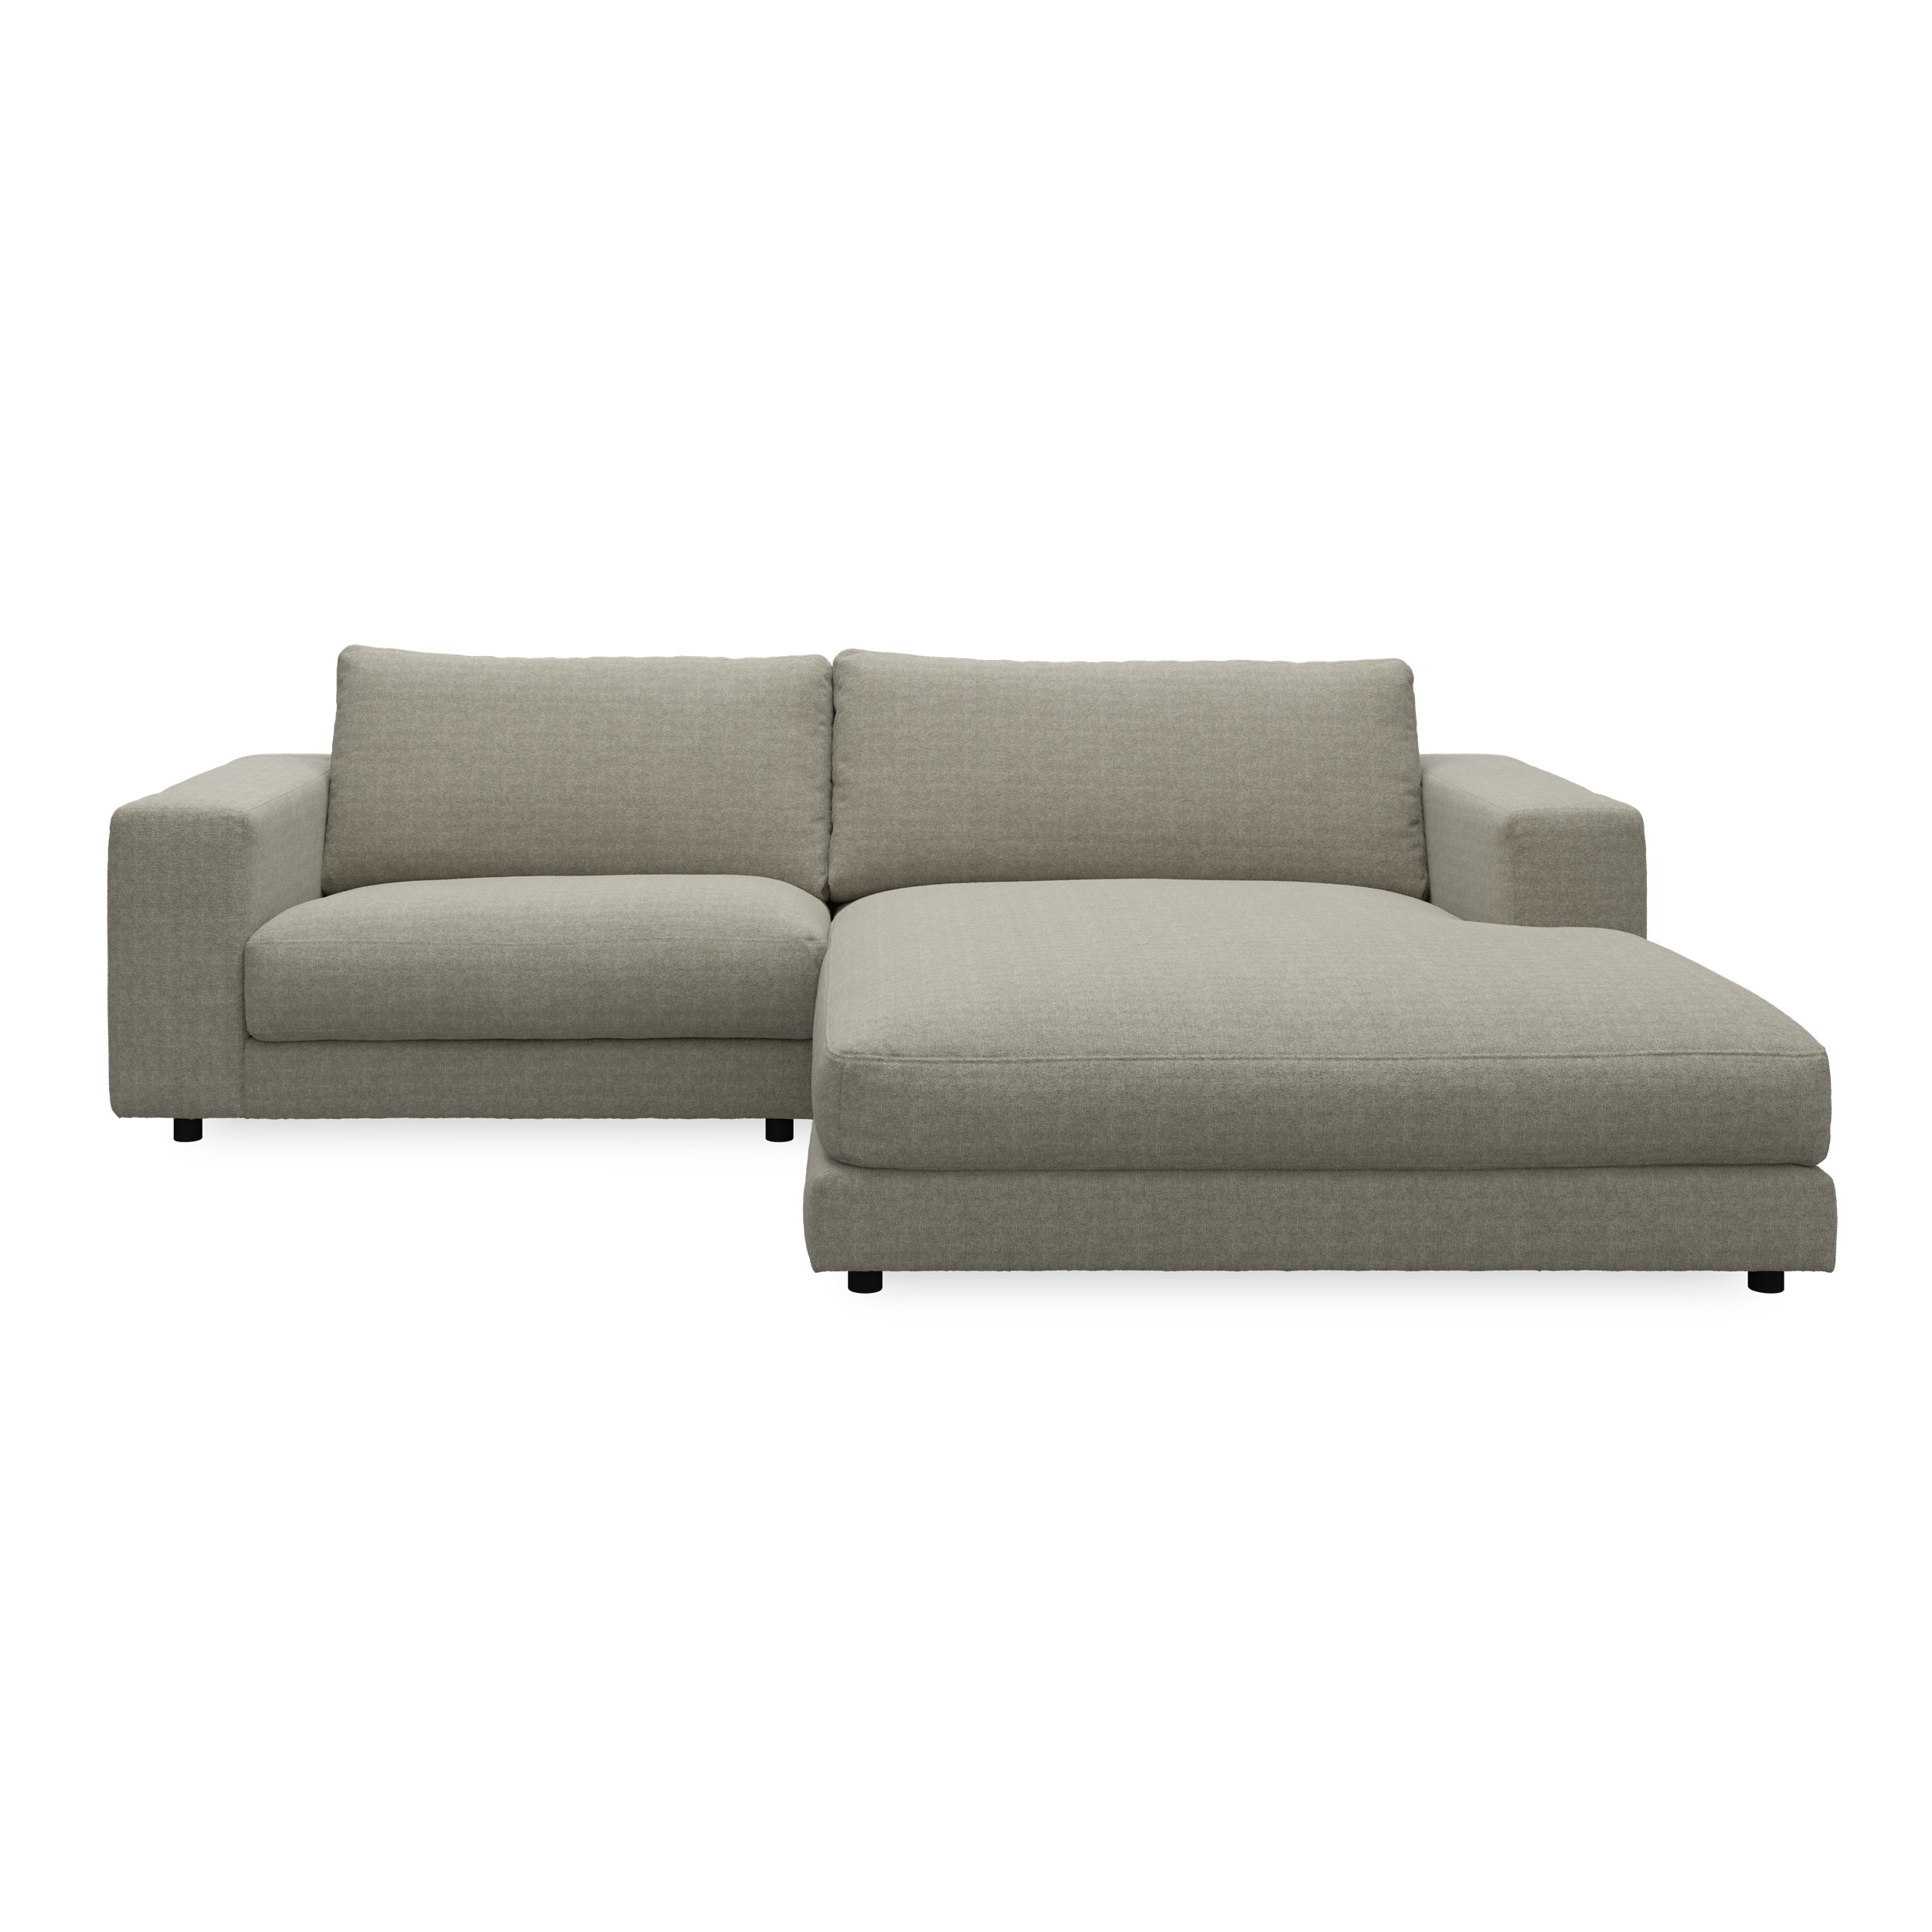 Bennent högervänd soffa med schäslong - Yelda Taupe klädsel, ben i svart plast och S:skum/fib/din/sili R:Dun/skum